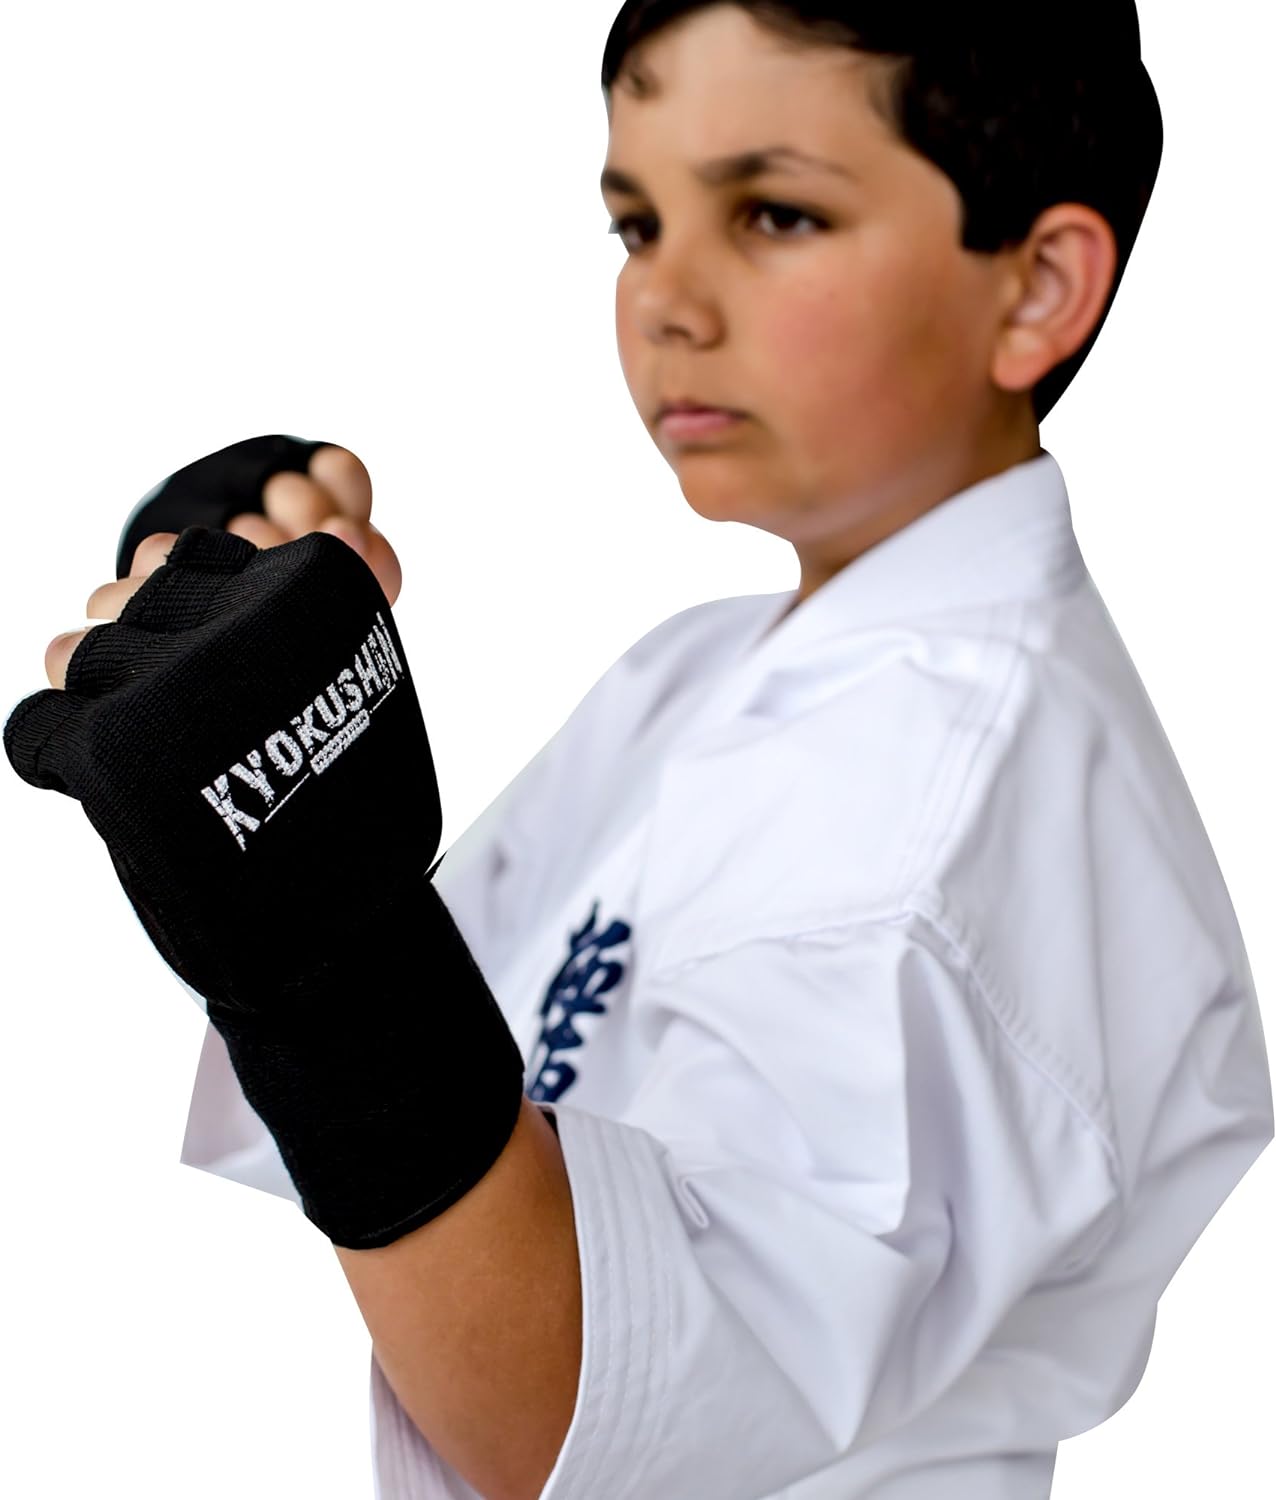 kickboxing-muay-thai-mma-bandages 